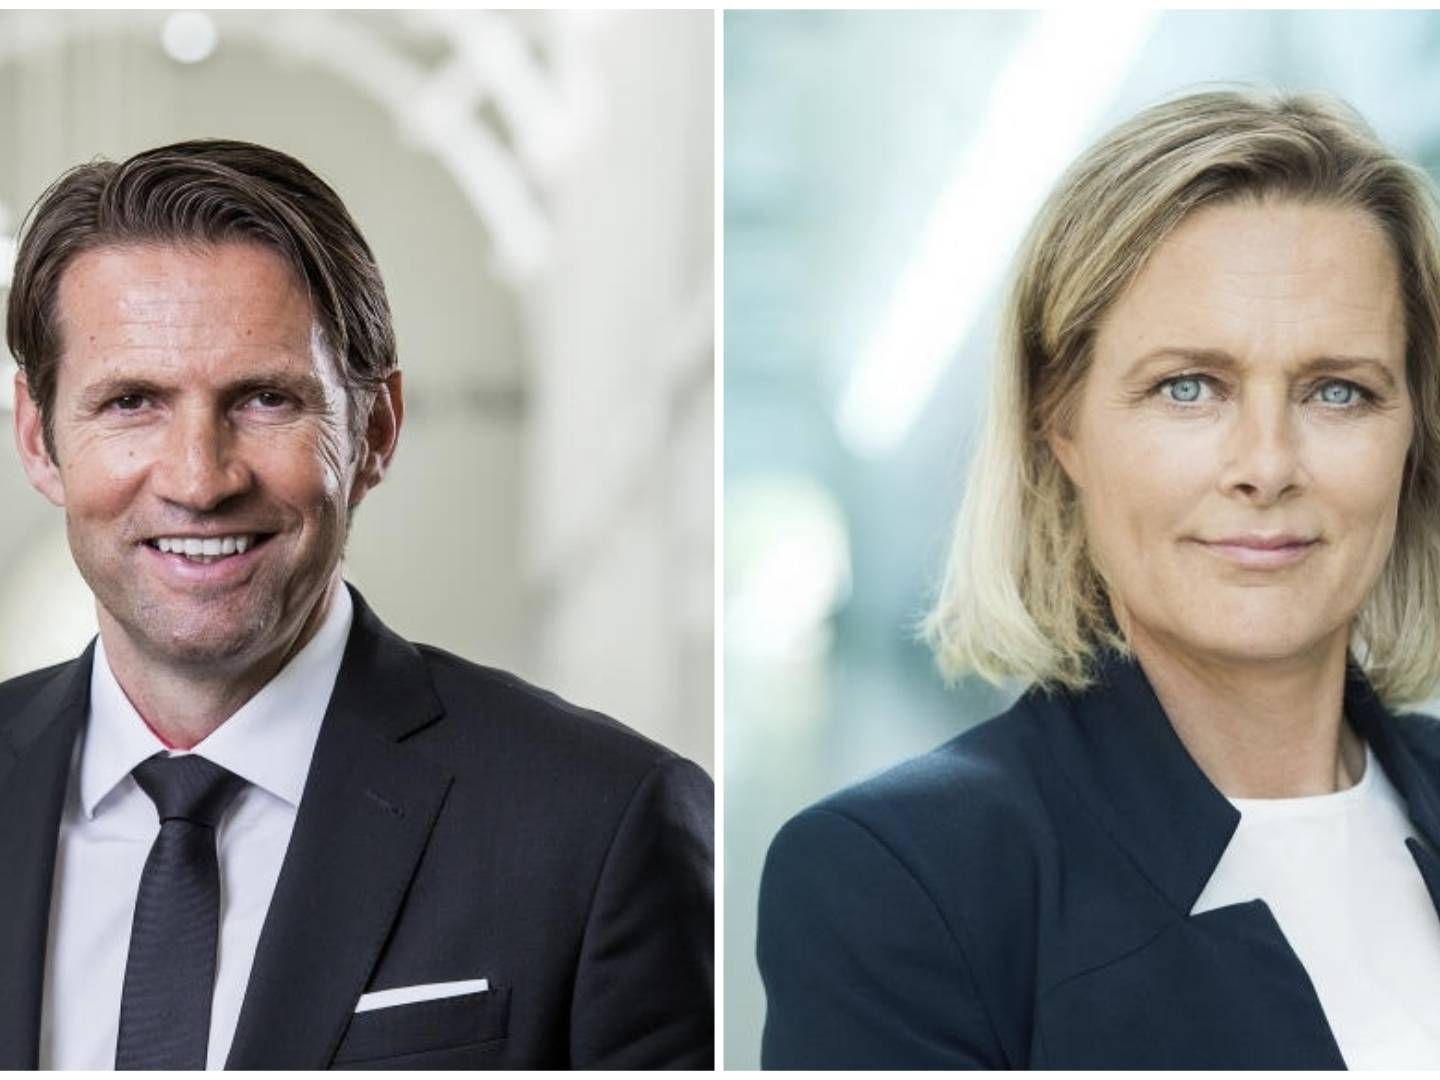 TV 2's bestyrelsesformand, Jimmy Maymann, og adm. direktør Anne Engdal Stig Christensen. | Foto: PR / TV 2 / Jens Wognsen / Miklos Szabo (sammensat af MediaWatch)